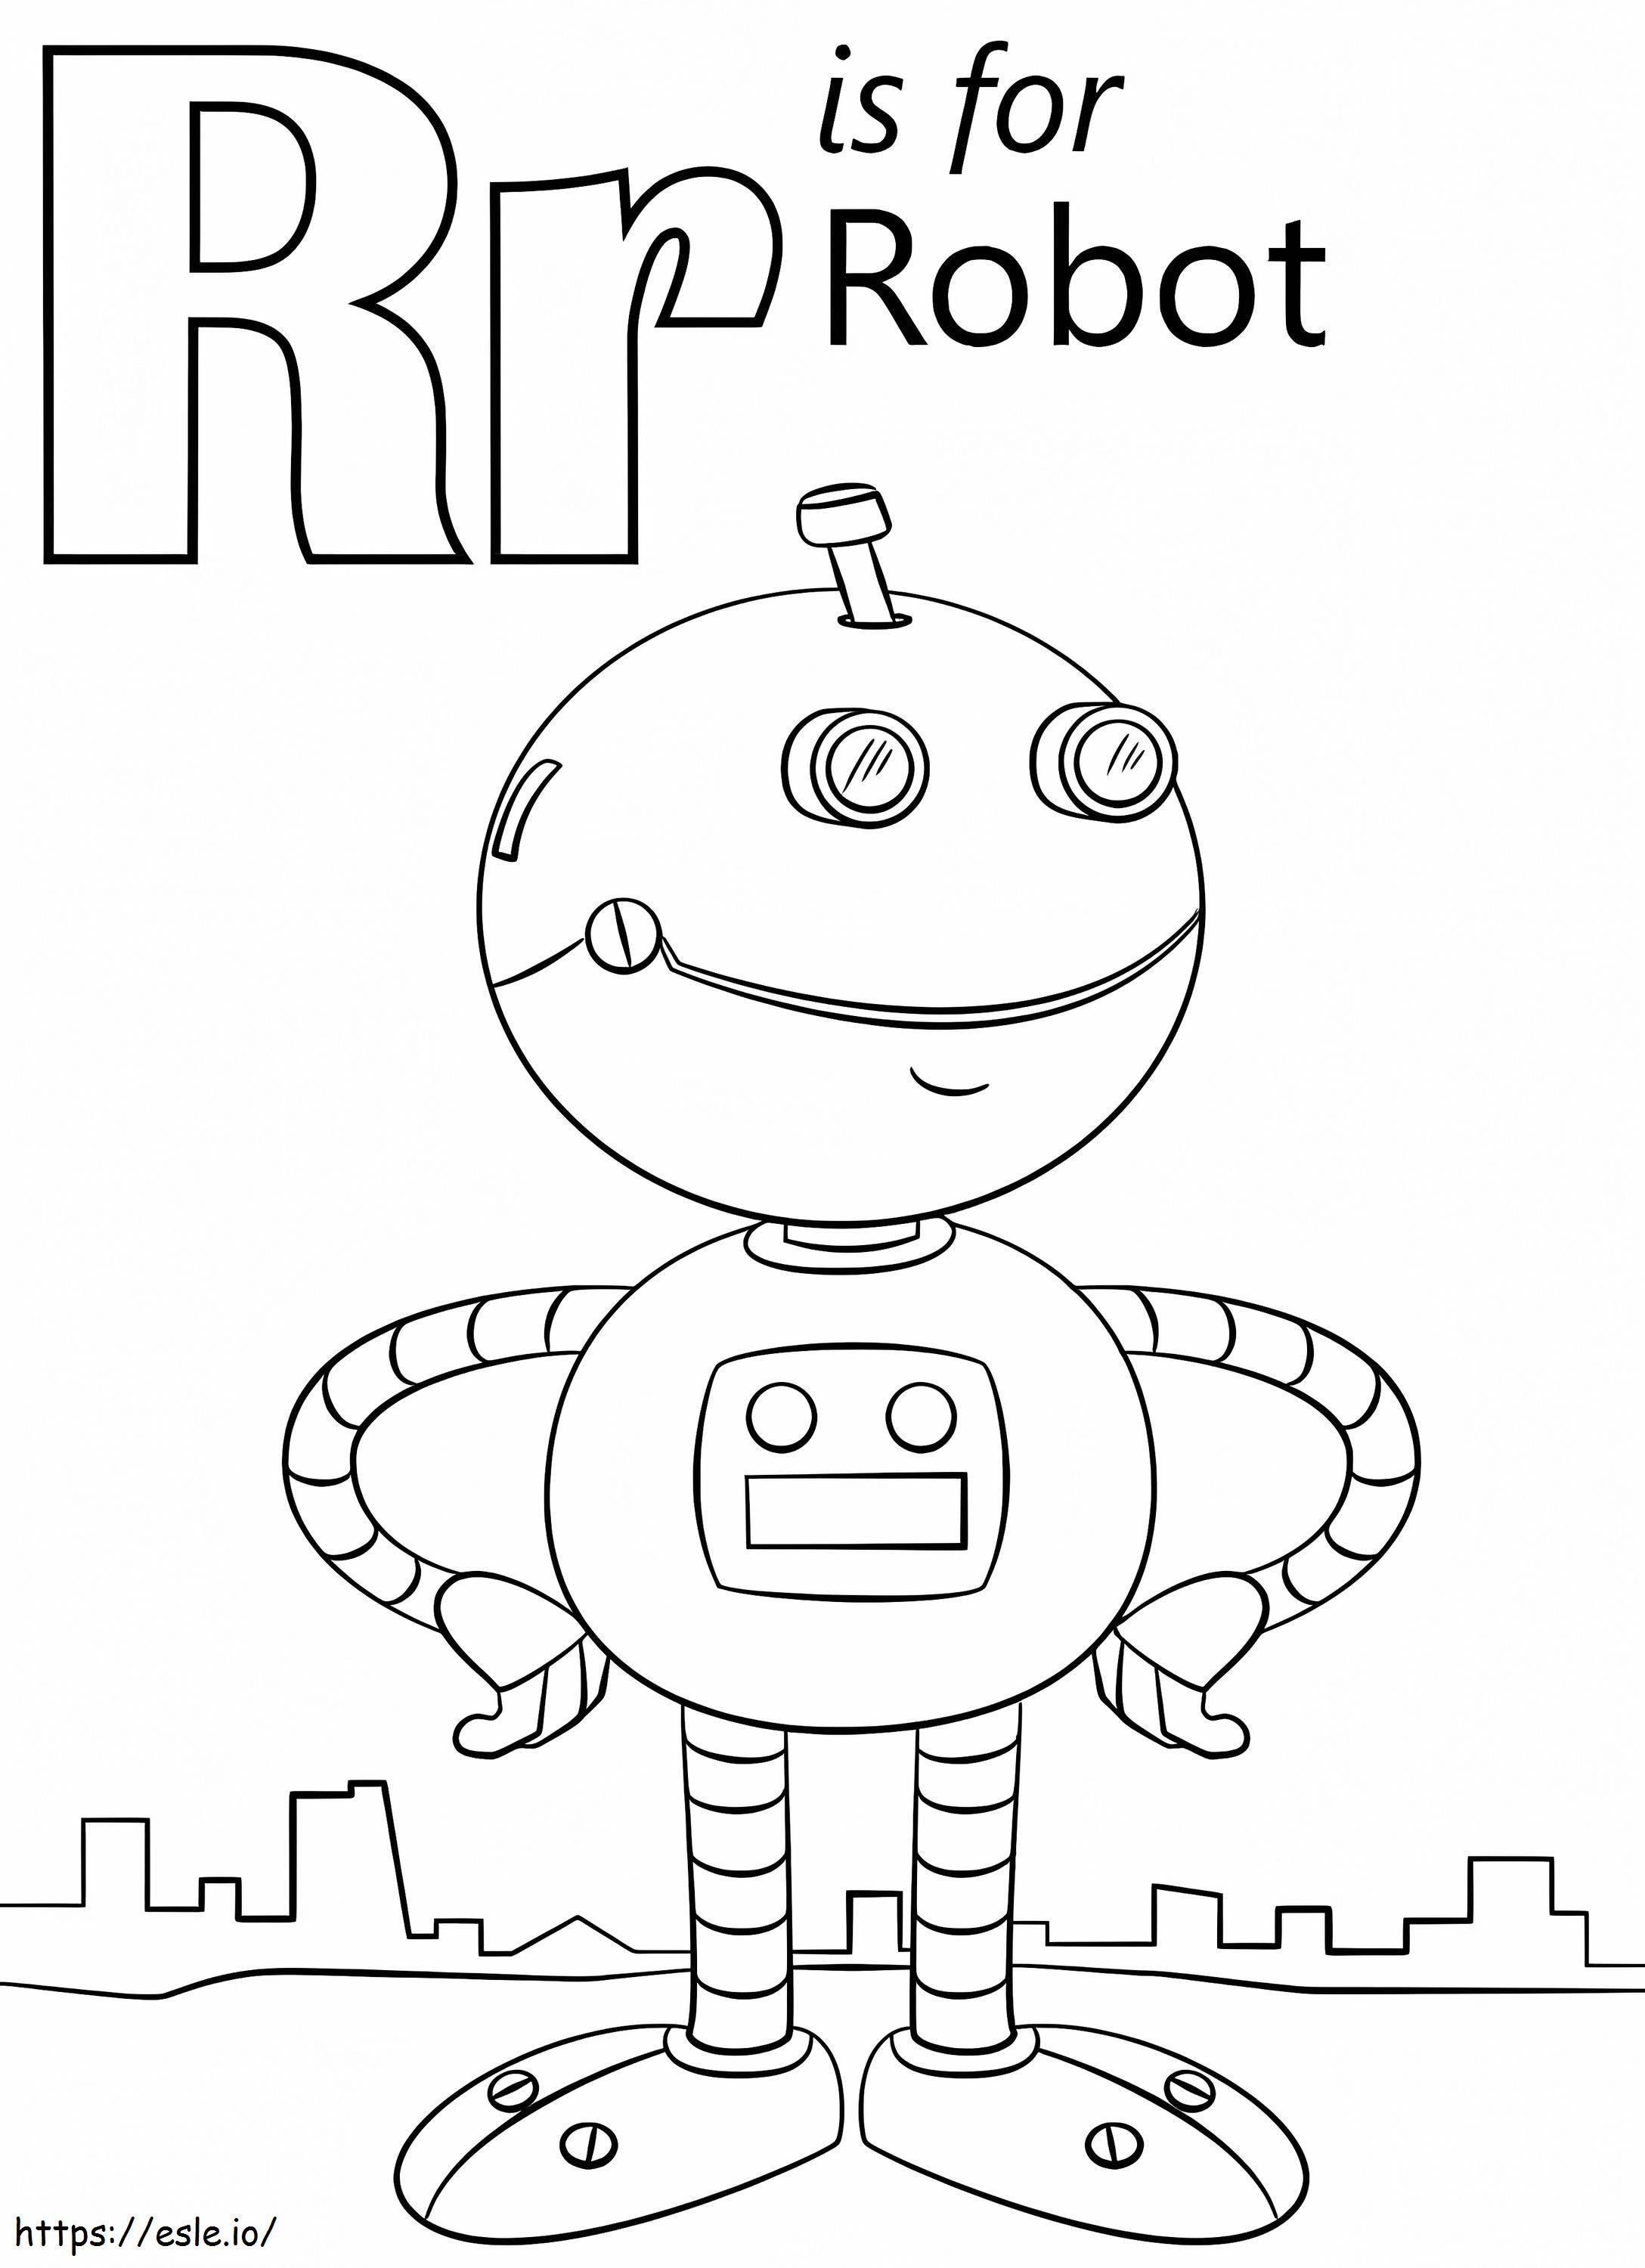 Roboterbuchstabe R ausmalbilder